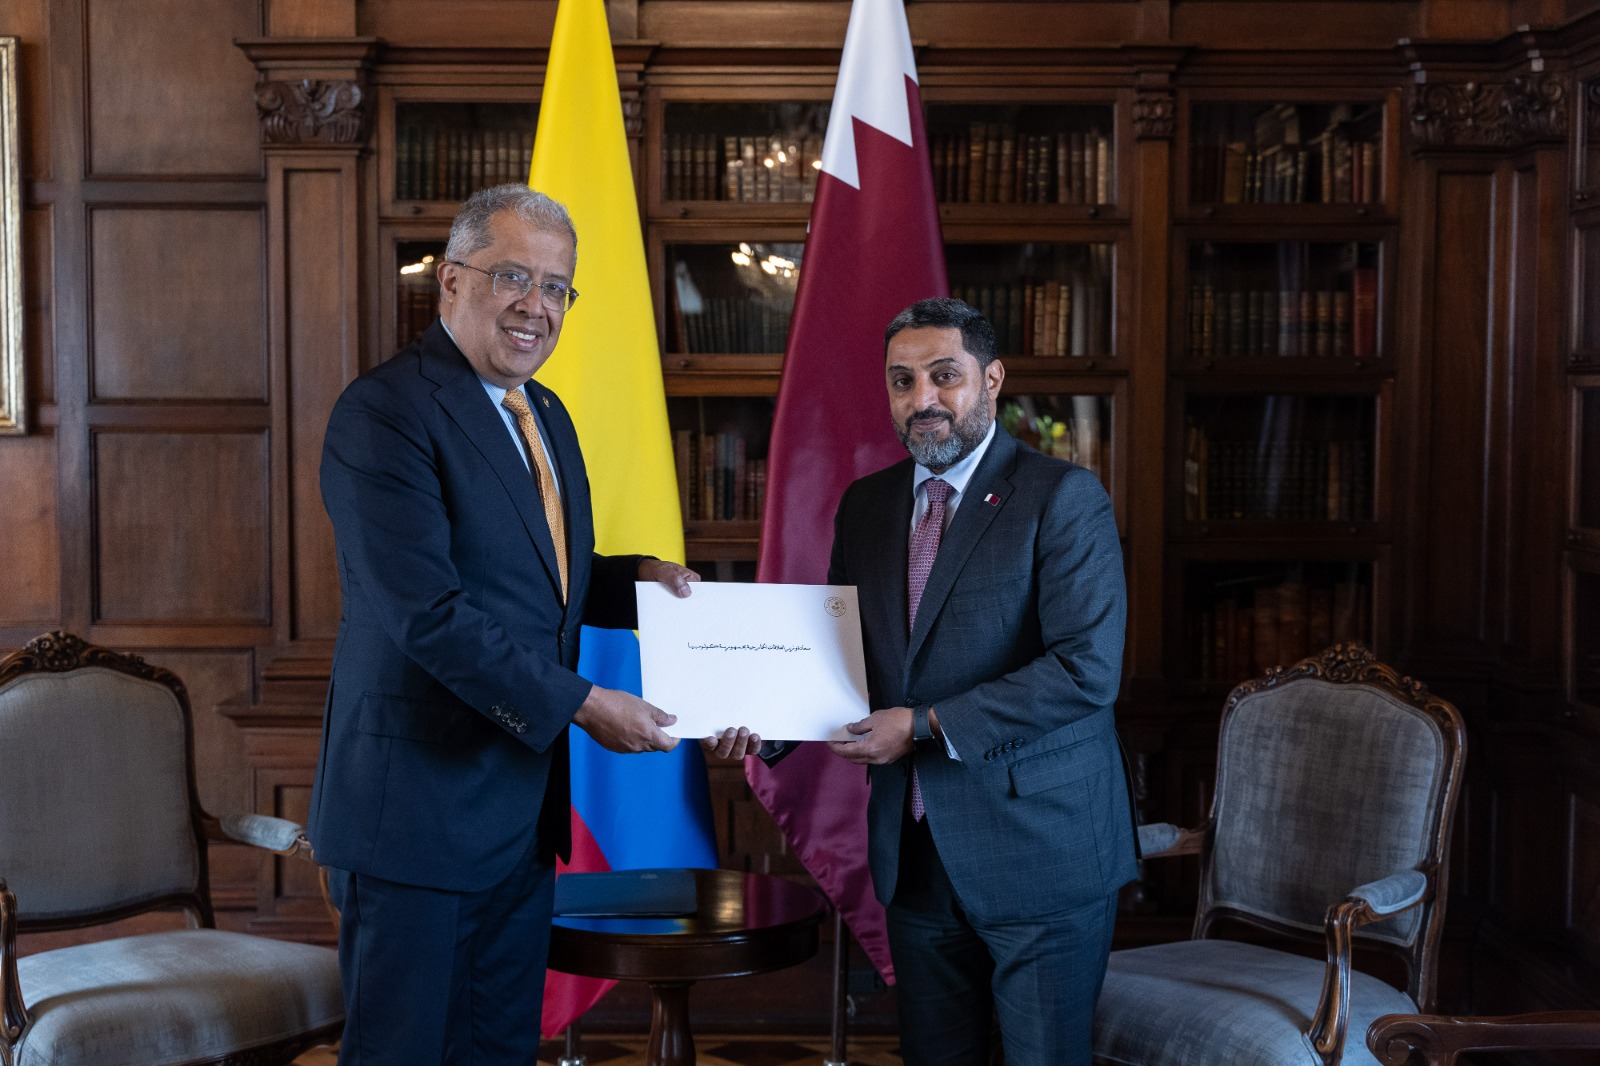 Viceministro de Relaciones Exteriores recibió copia de Cartas Credenciales del nuevo embajador de Qatar en Colombia